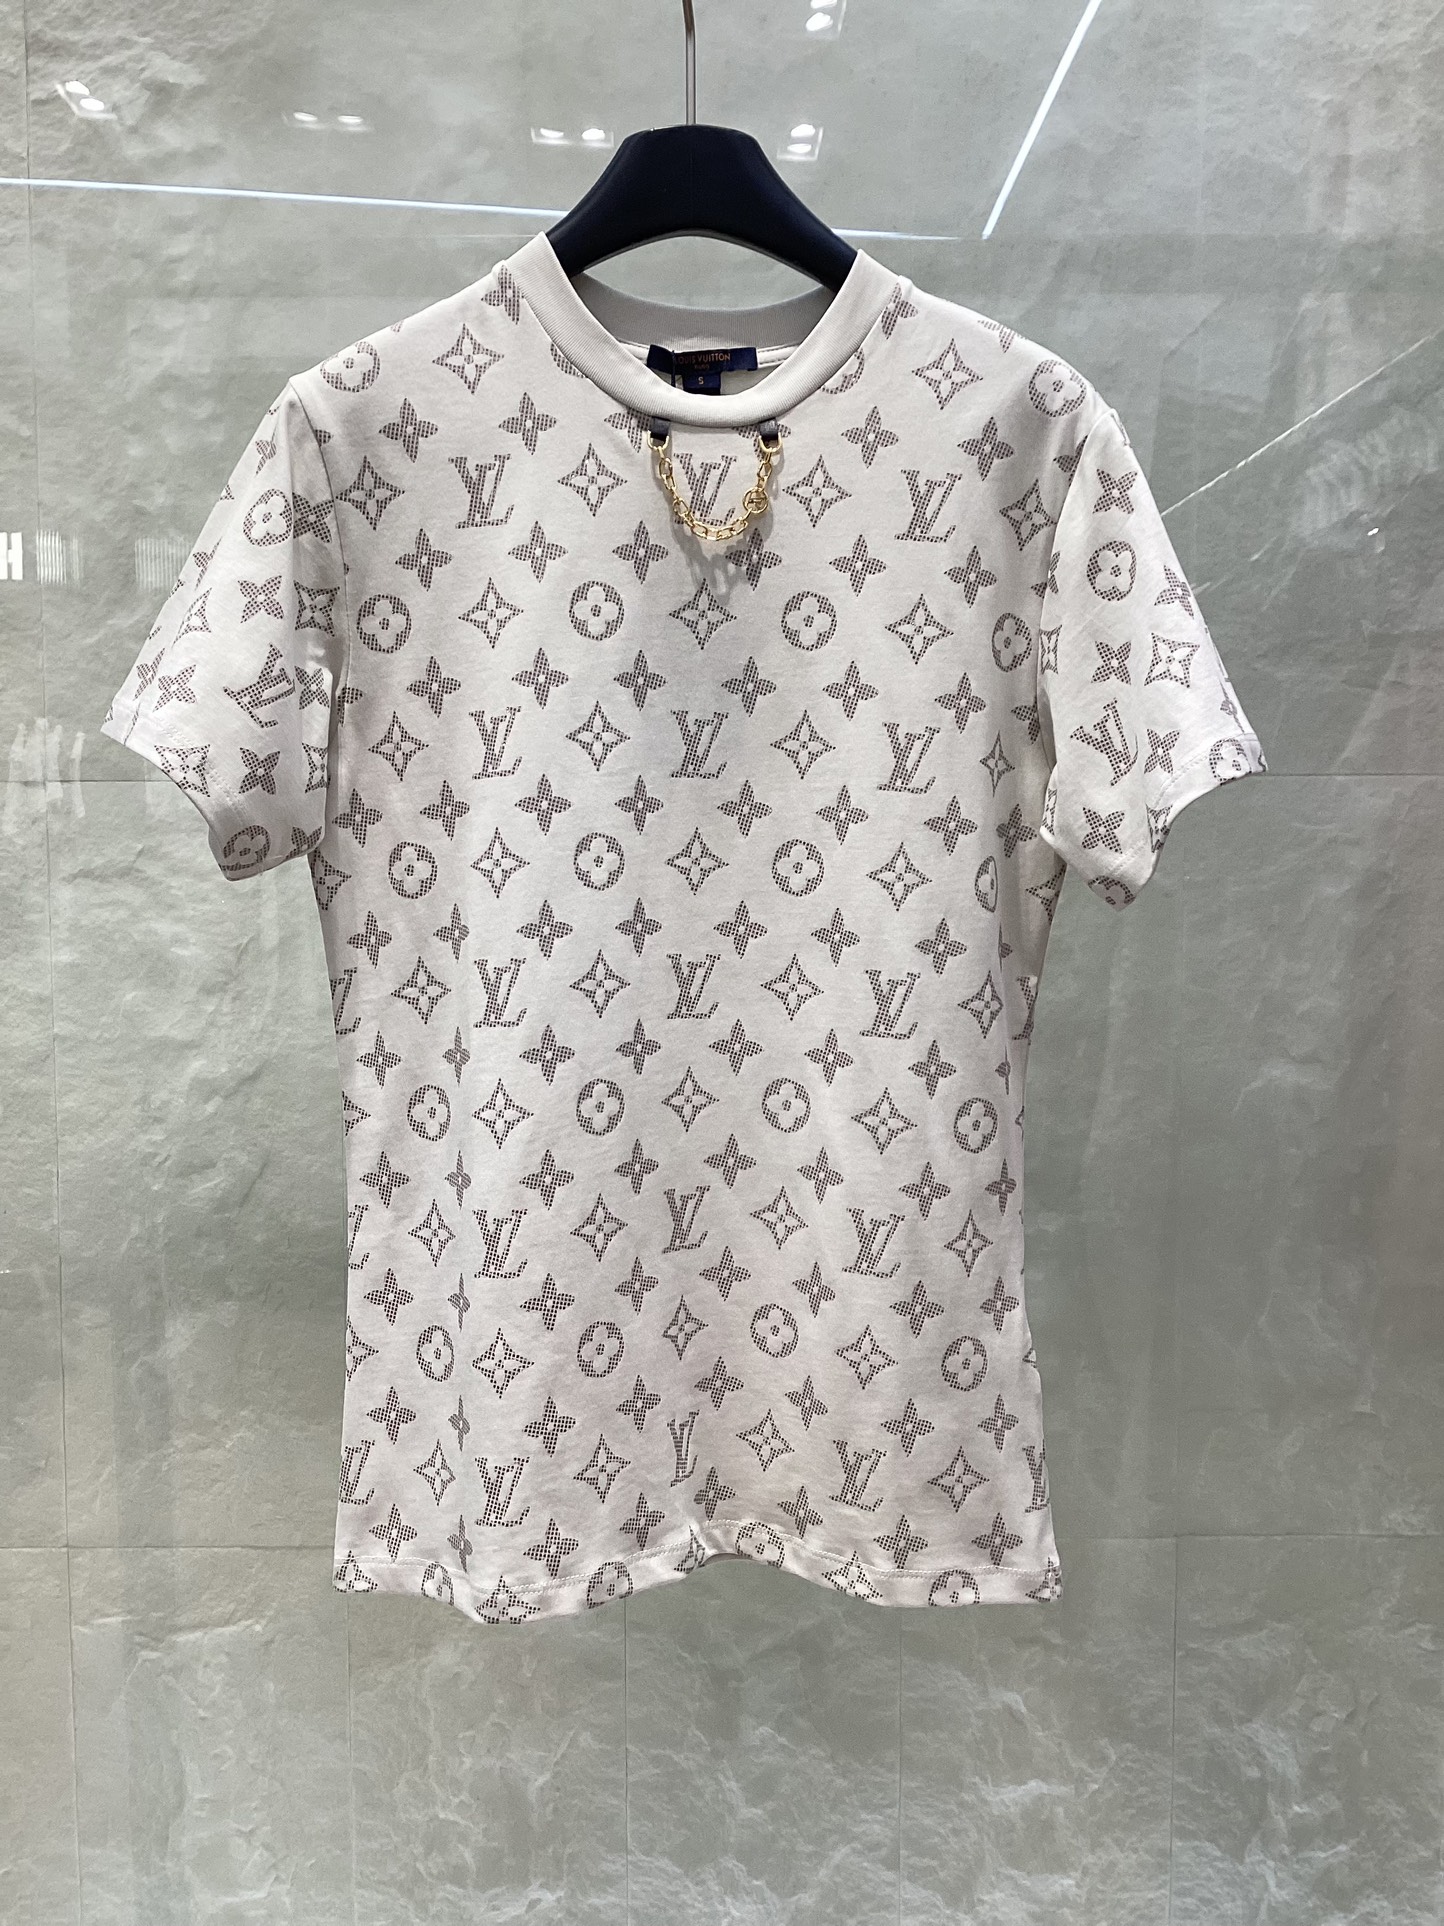 Louis Vuitton Kleding T-Shirt Abrikos kleur Roze Afdrukken